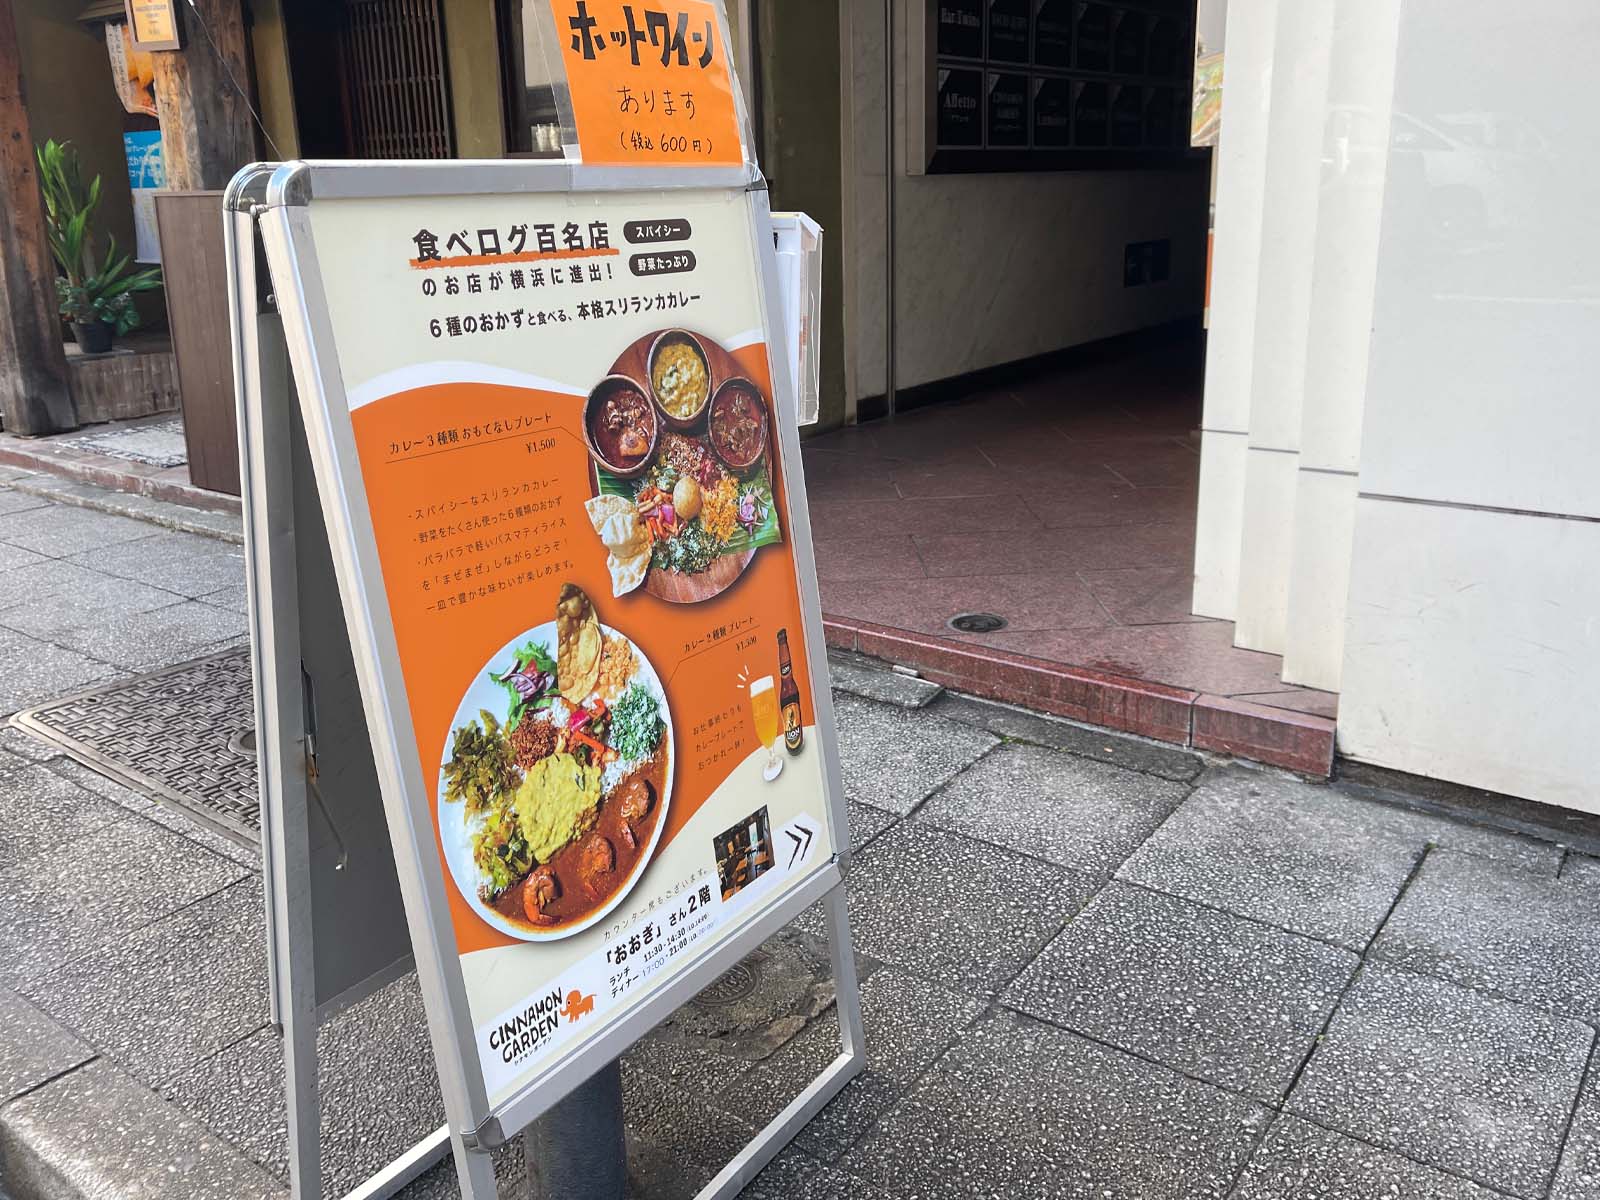 6種類のおかずと食べる本格スリランカカレー「シナモンガーデン」に行ったよ！／横浜関内